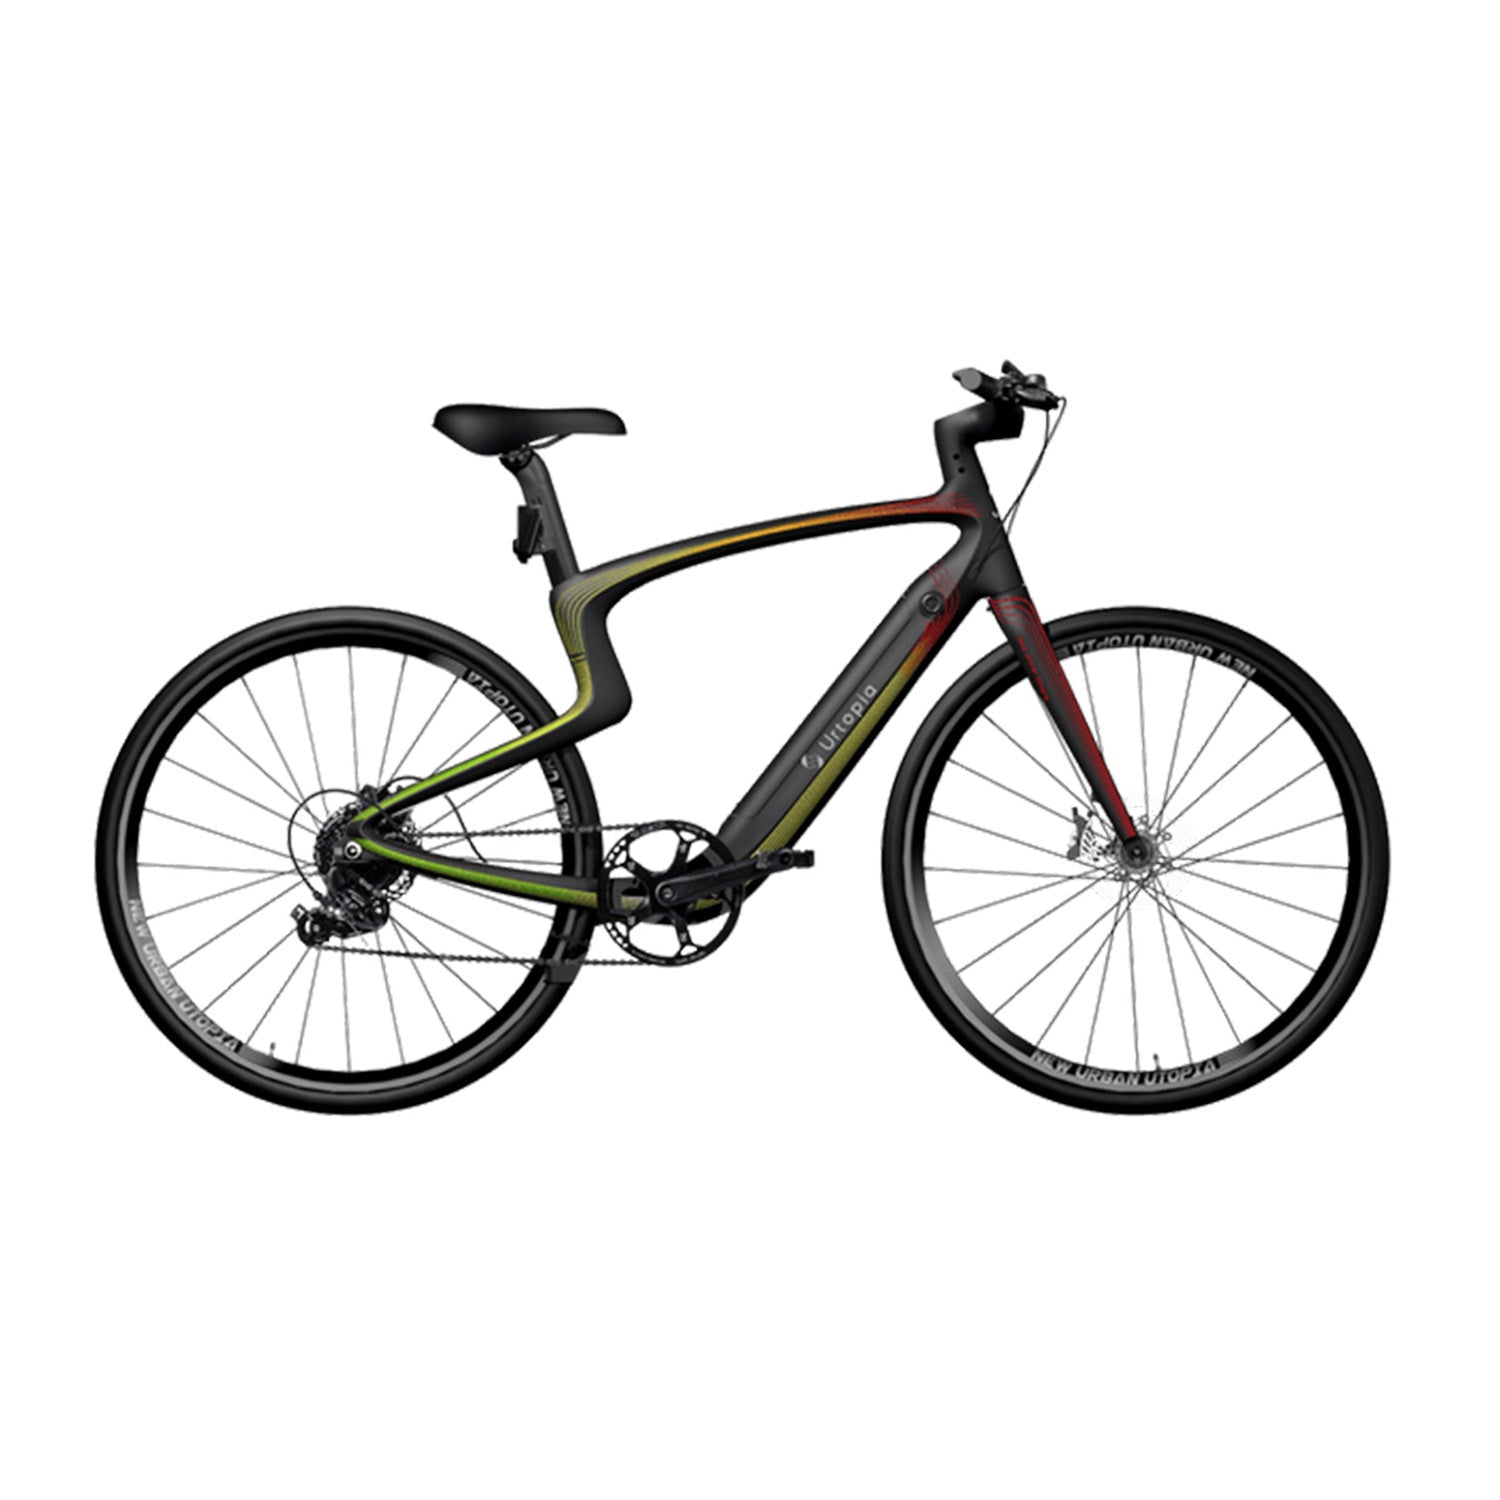 Urtopia Carbon 1/1s E-Bike bis 15kg ultraleicht - Elektrische Fahrräder Urtopia